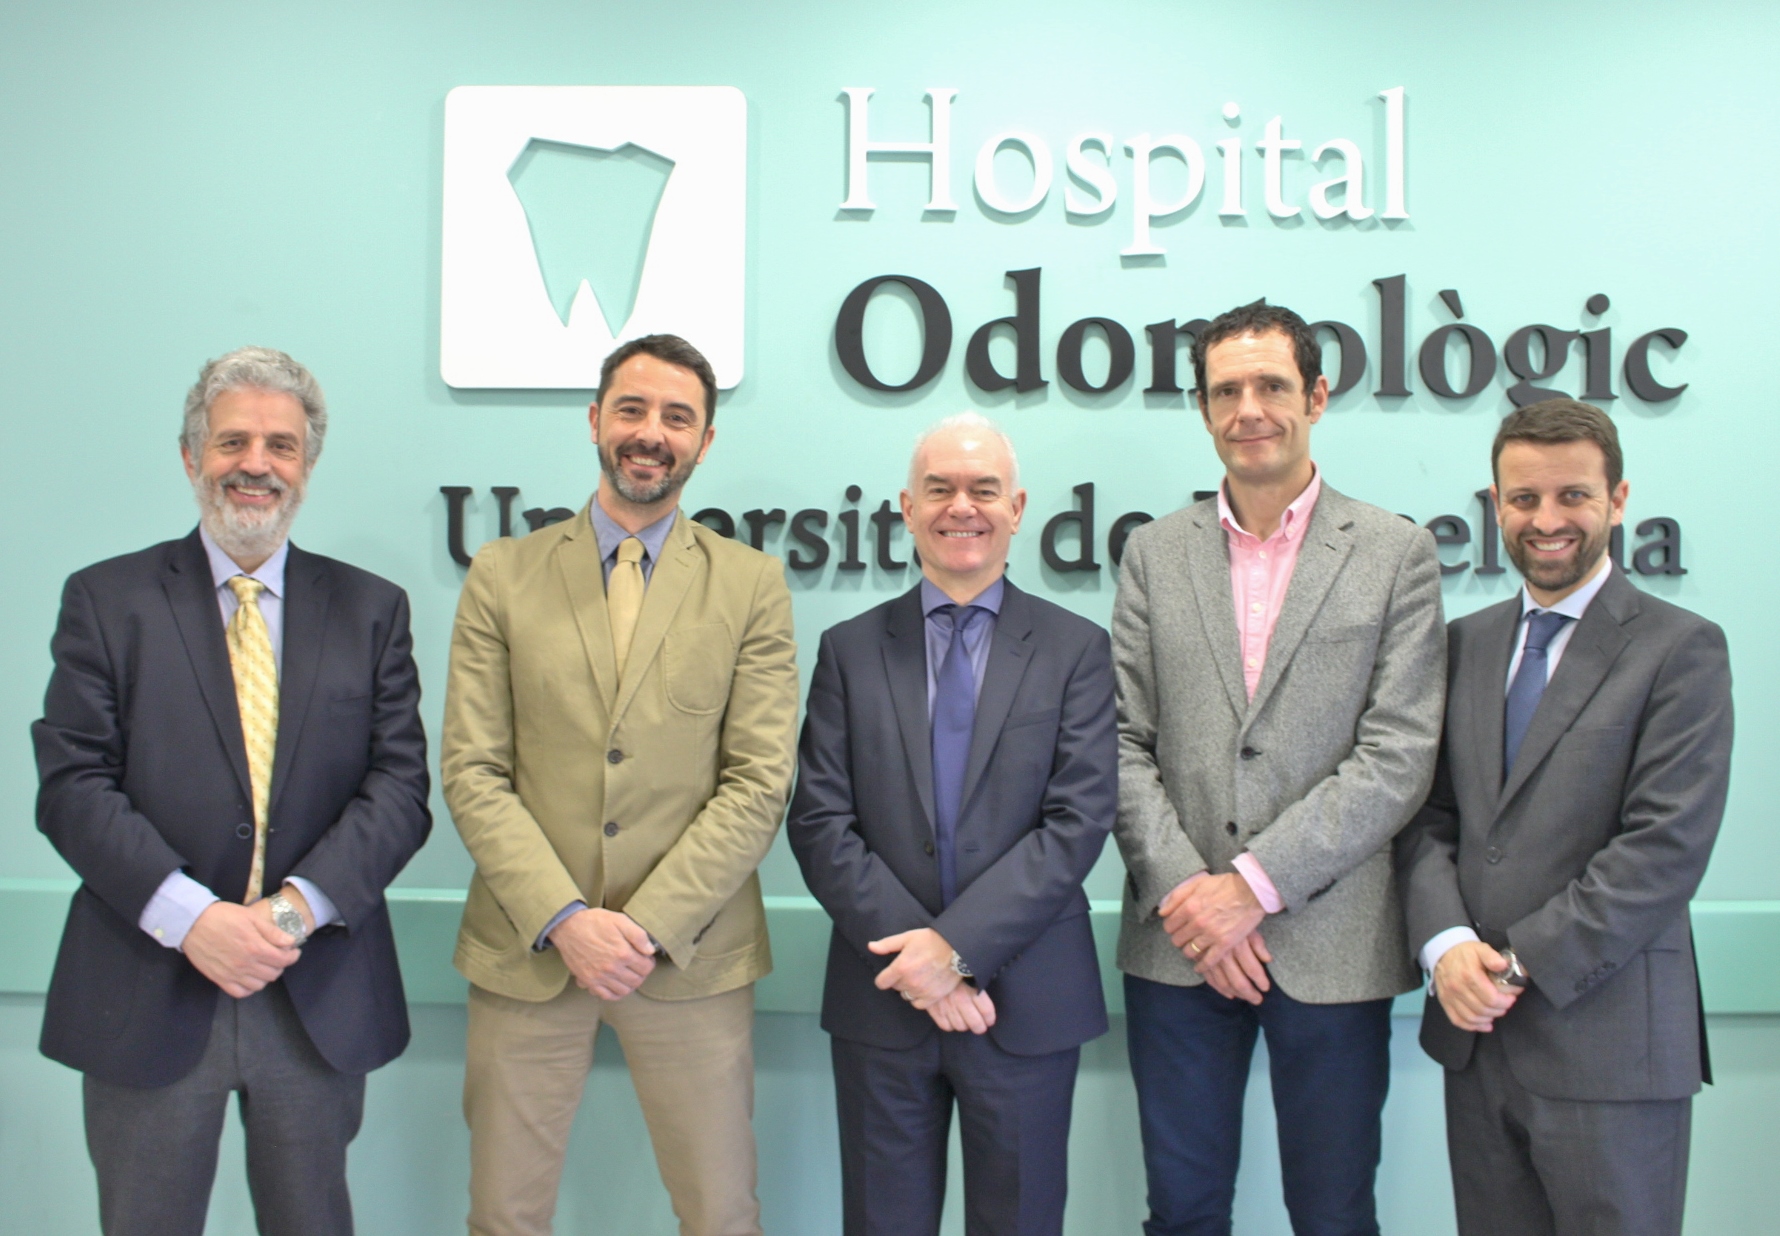 L'Hospital Odontològic Universitat de Barcelona recibe la visita del Dr. Paul Coulthard, decano de Odontología de la Universidad de Manchester